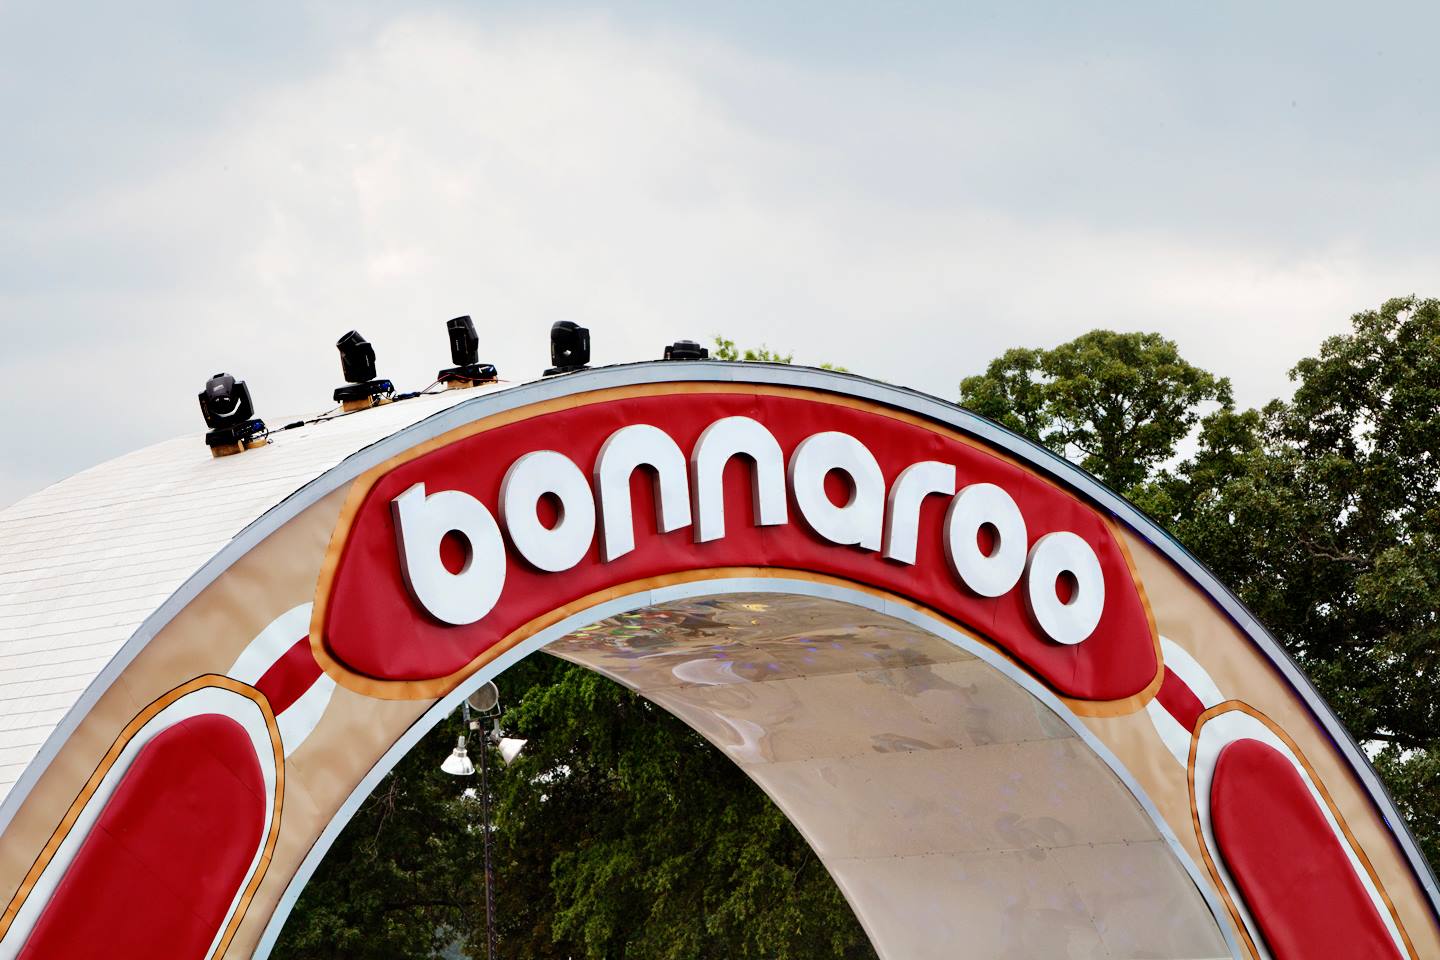 Bonnaroo 2013 | Review & Photos